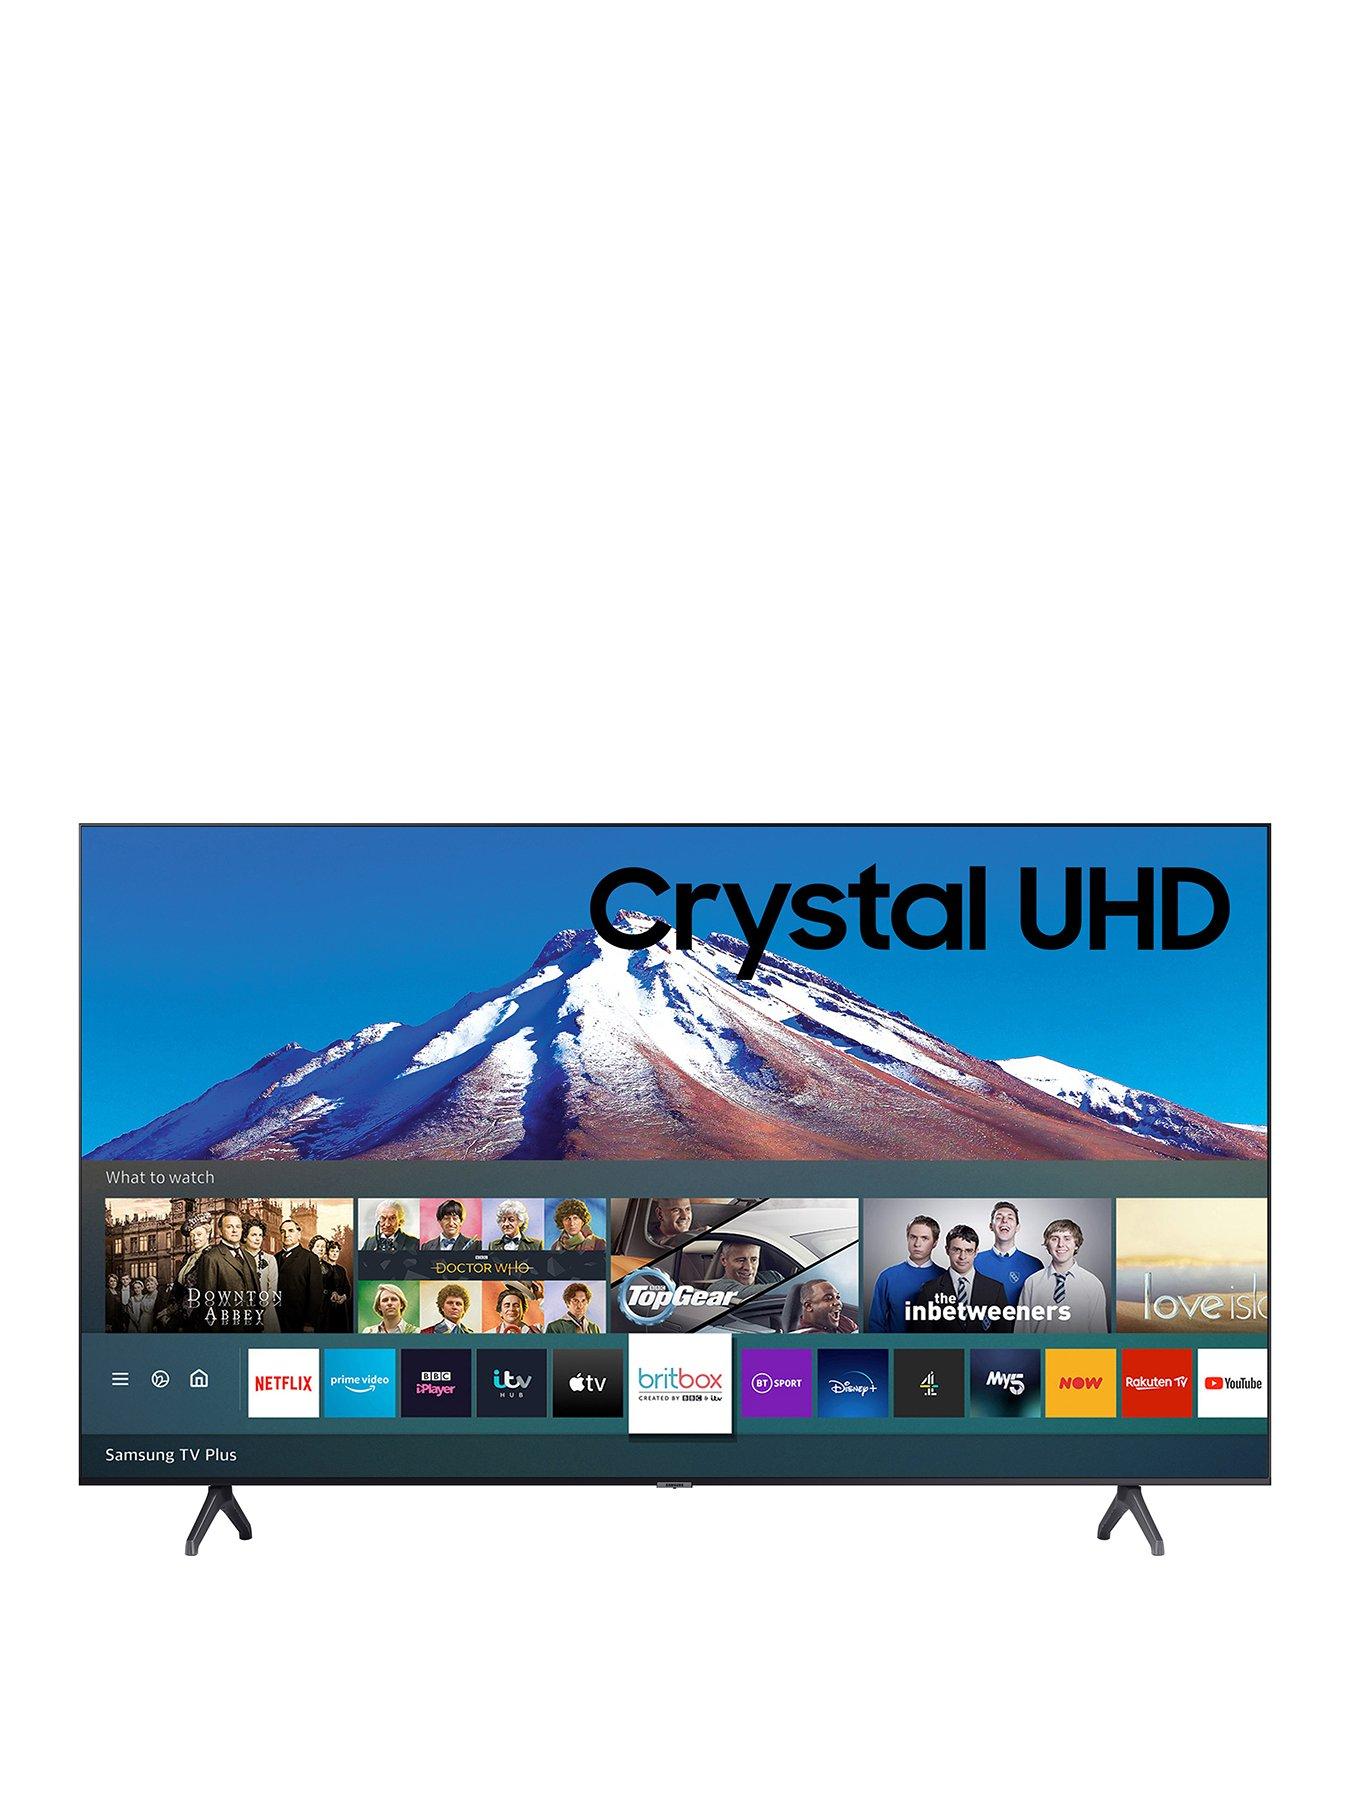 Samsung UE70TU7020KXXU, 70 inch, Crystal UHD, 4K HDR, Smart TV | www.semadata.org